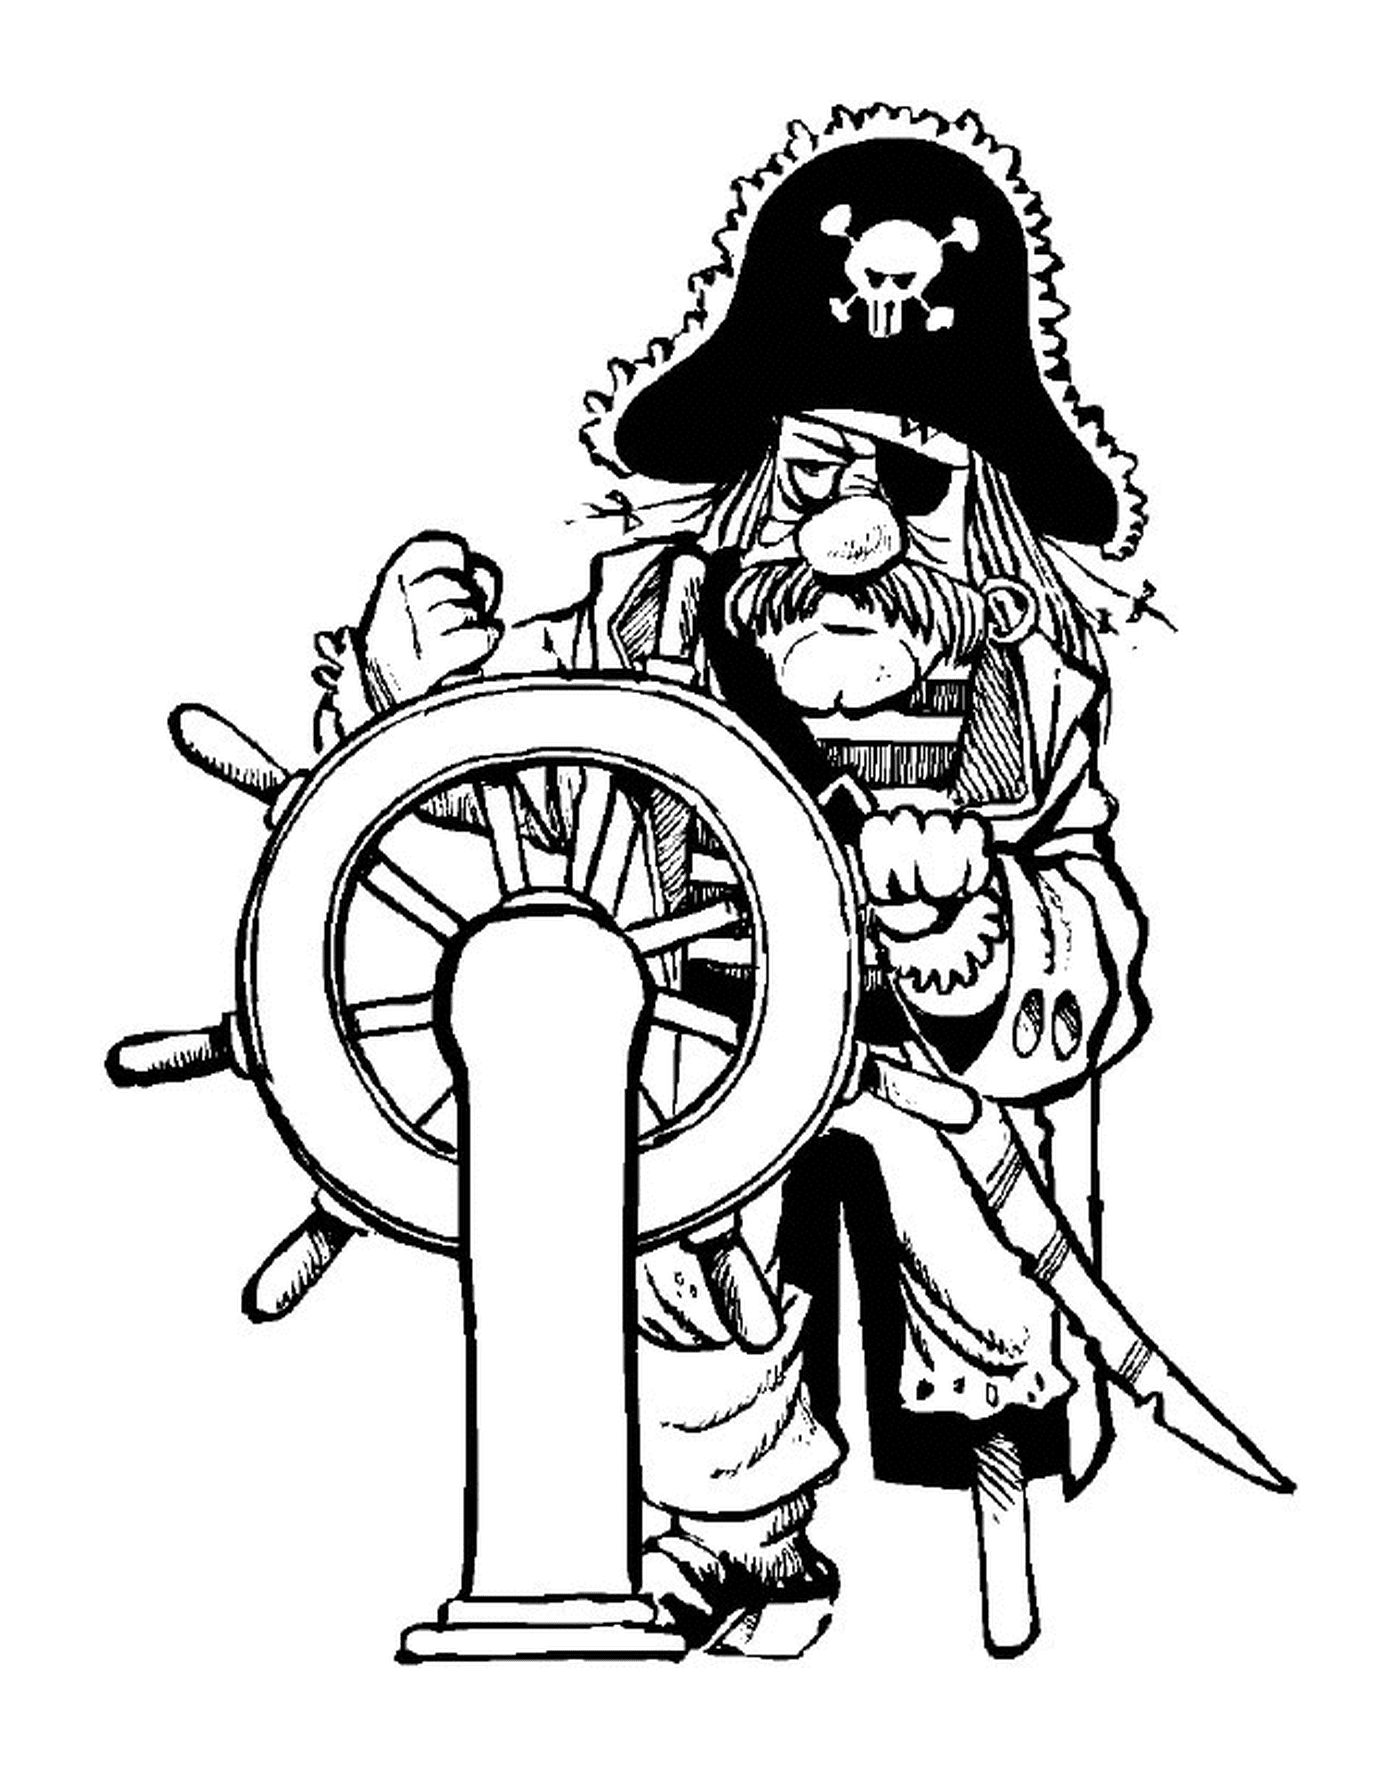  Il capitano pirata al timone 